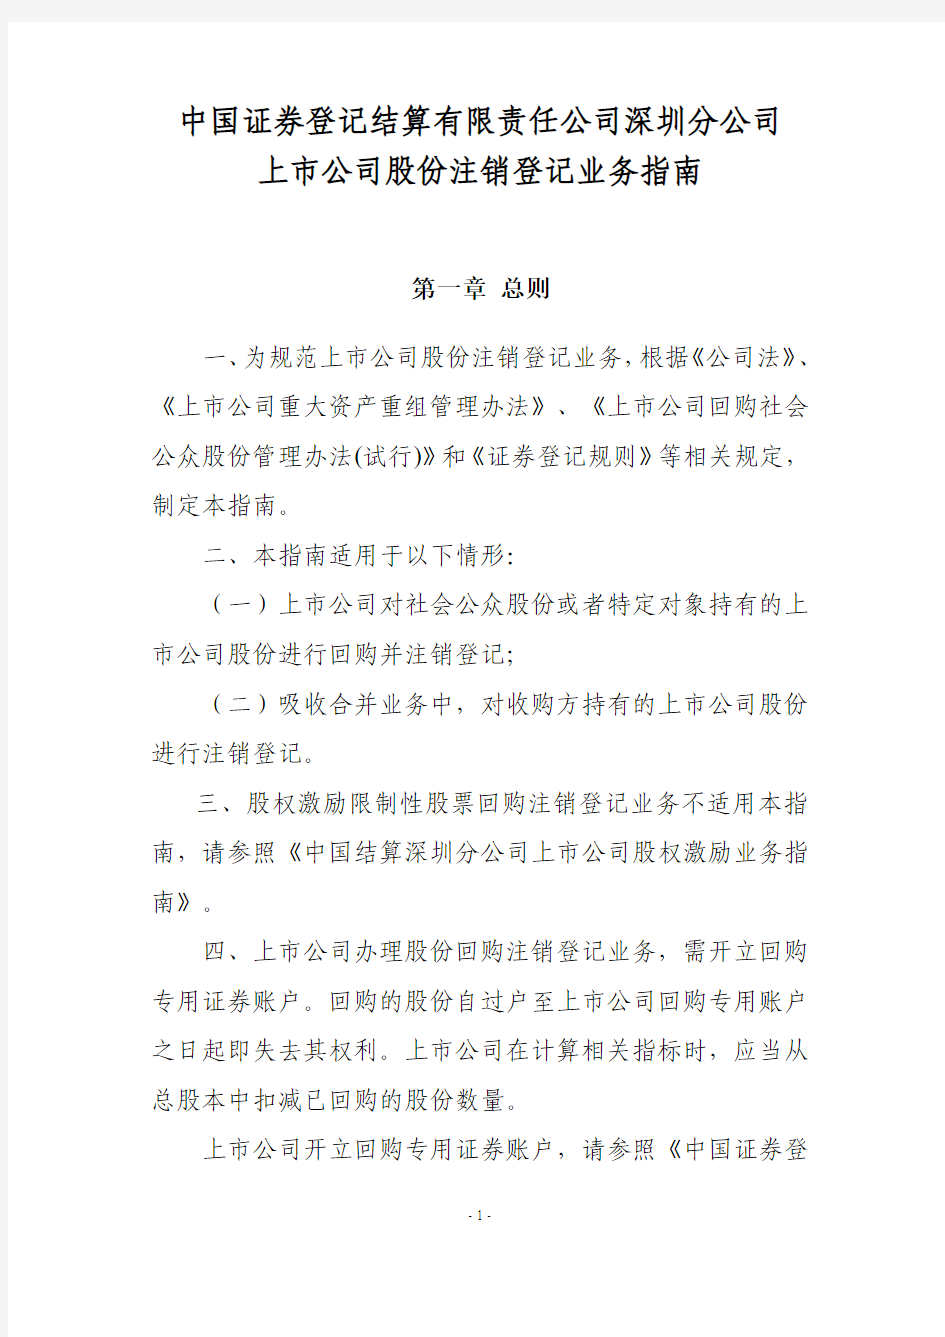 中国证券登记结算有限责任公司深圳分公司上市公司股份注销登记业务指南